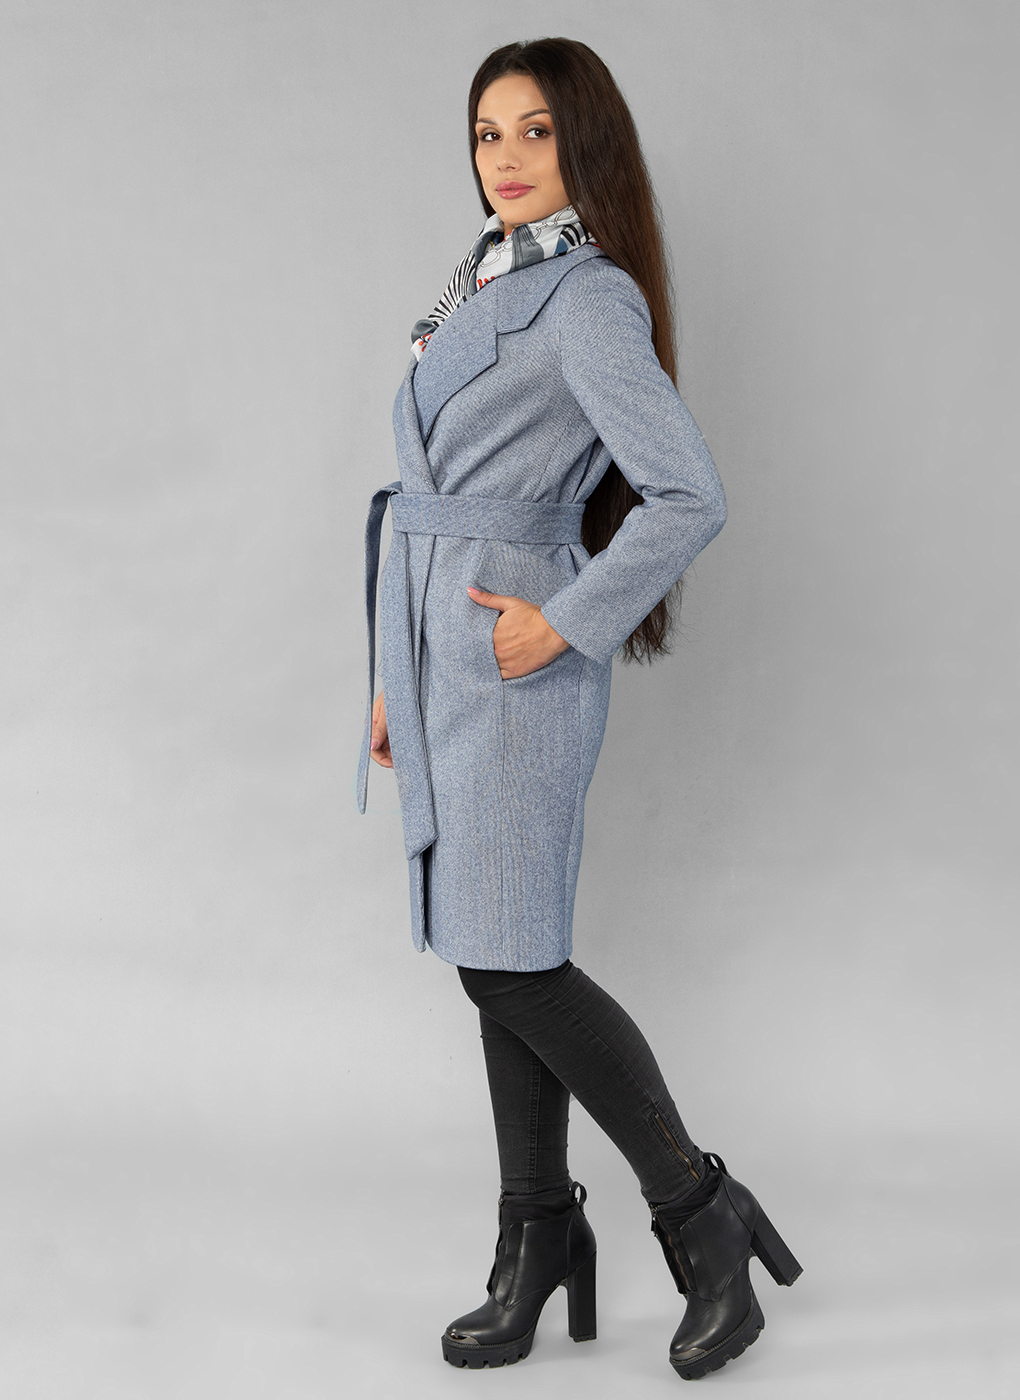 Пальто женское Sezalto 55023 синее 42 RU